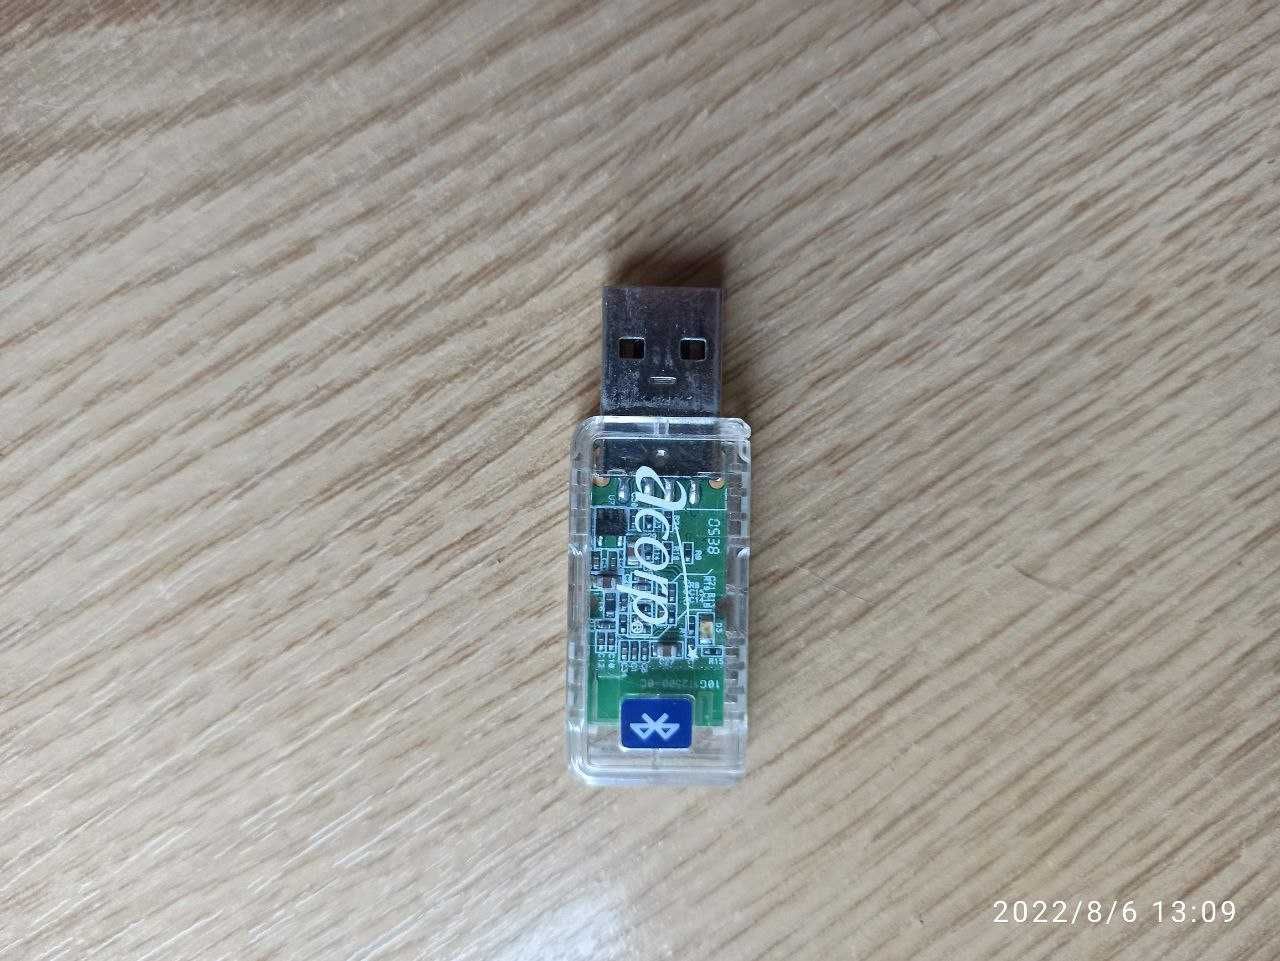 Bluetooth USB dongle for PC/laptop (бютуз USB донгл для ПК\ноутбуків)